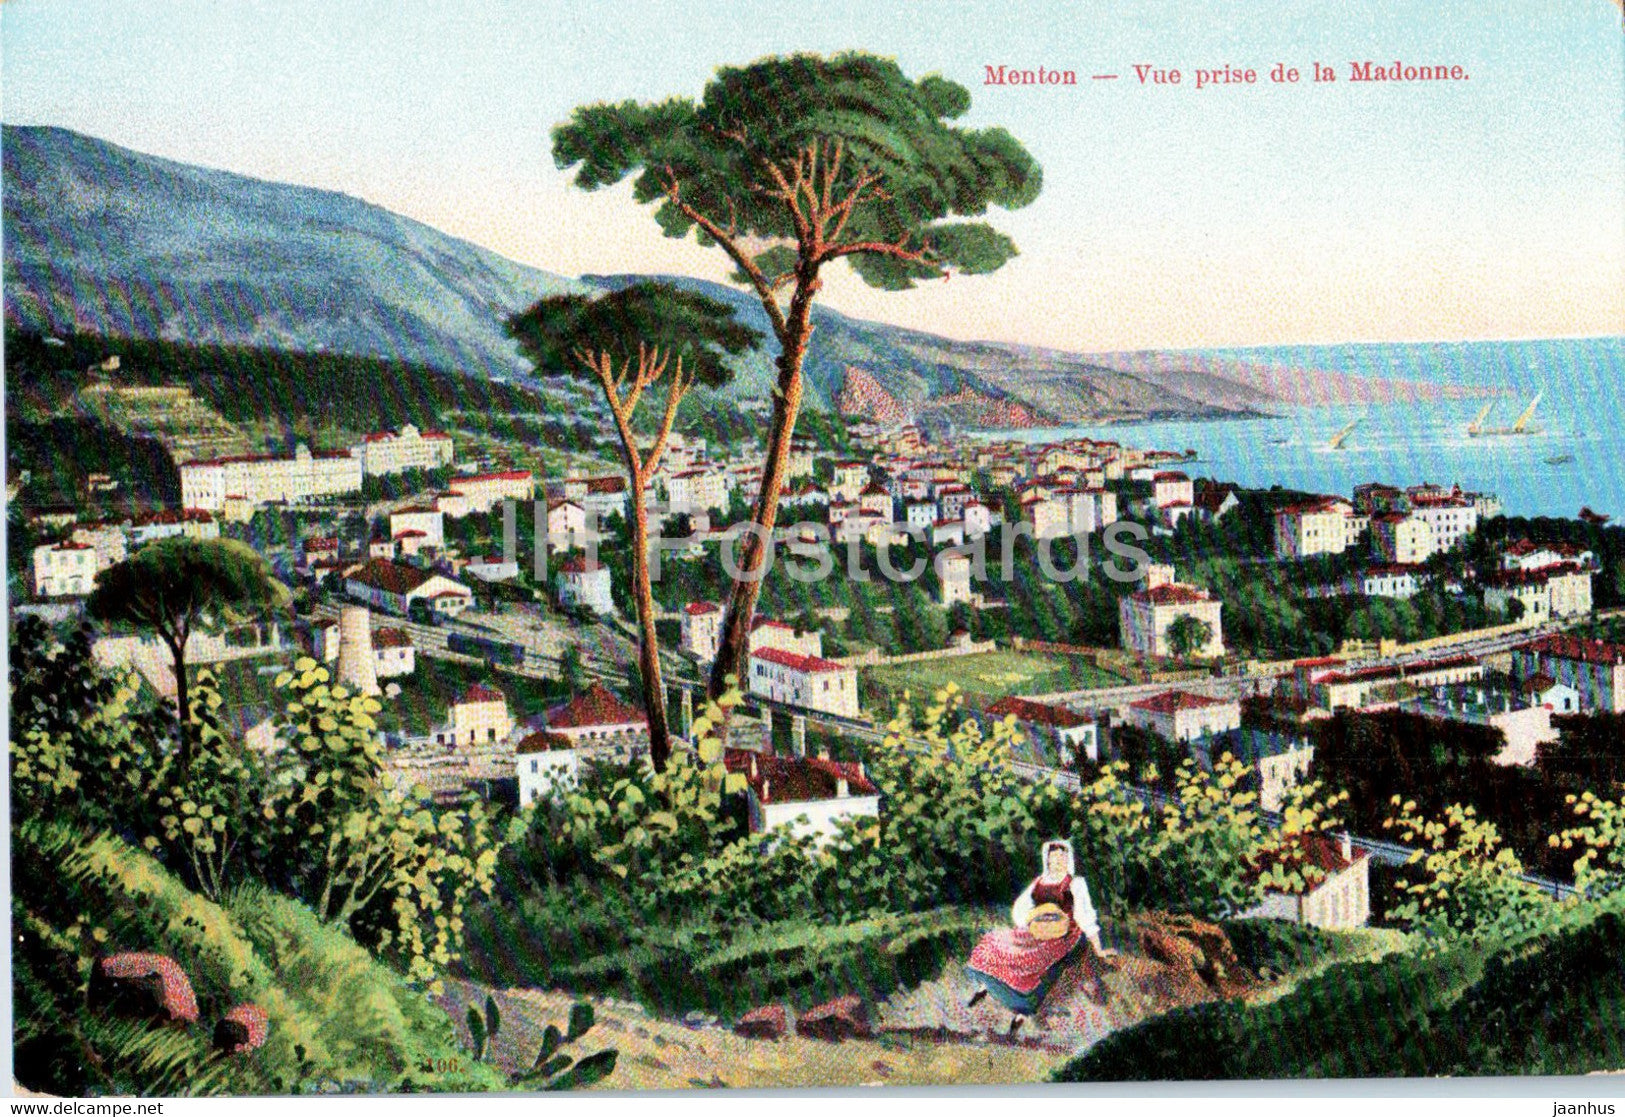 Menton - vue prise de la Madonne - old postcard - France - unused - JH Postcards